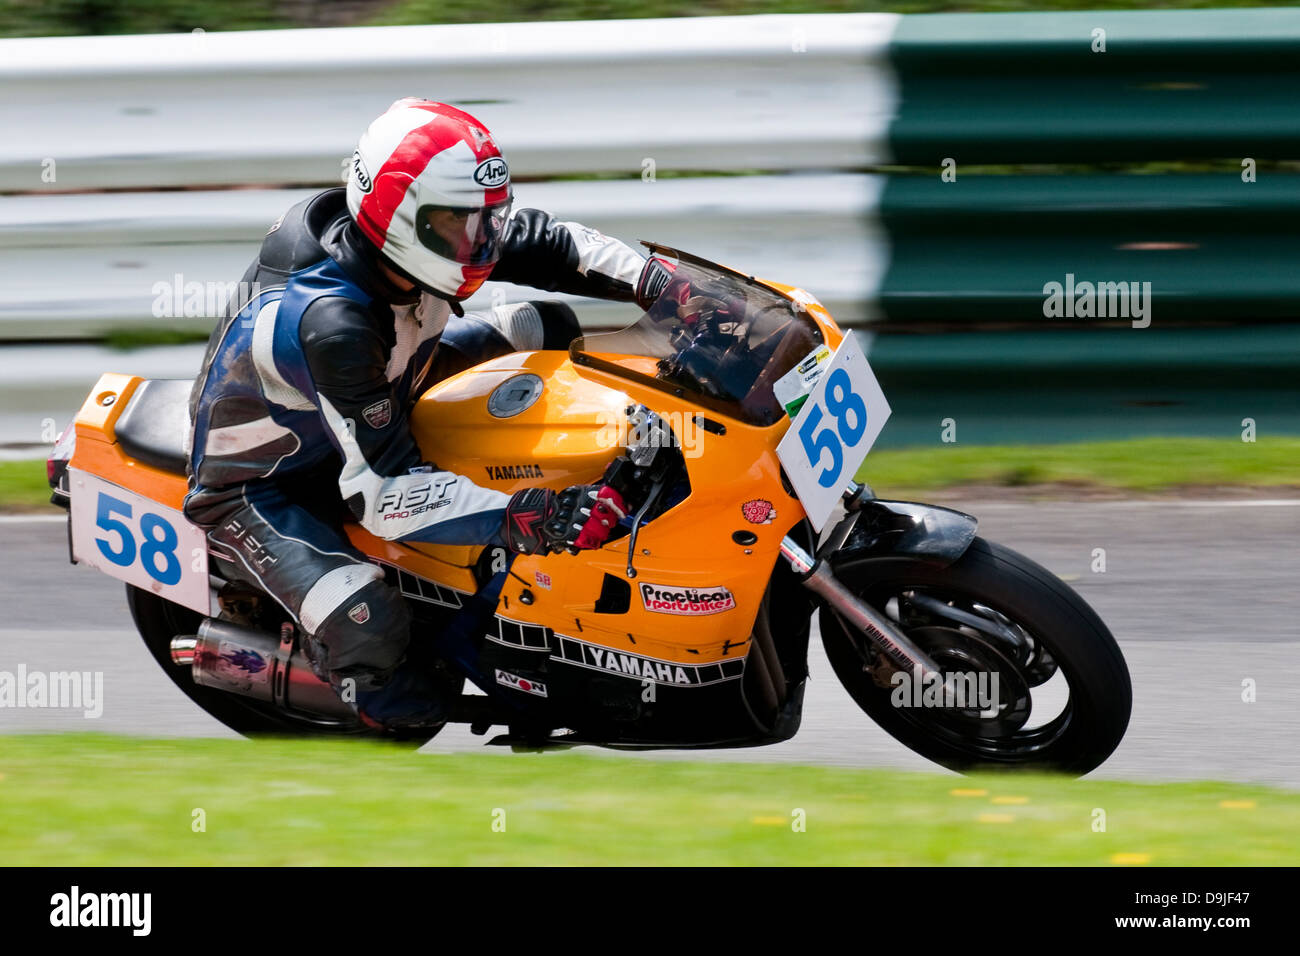 Yamaha FZ600, classic motorcycle racing Stock Photo